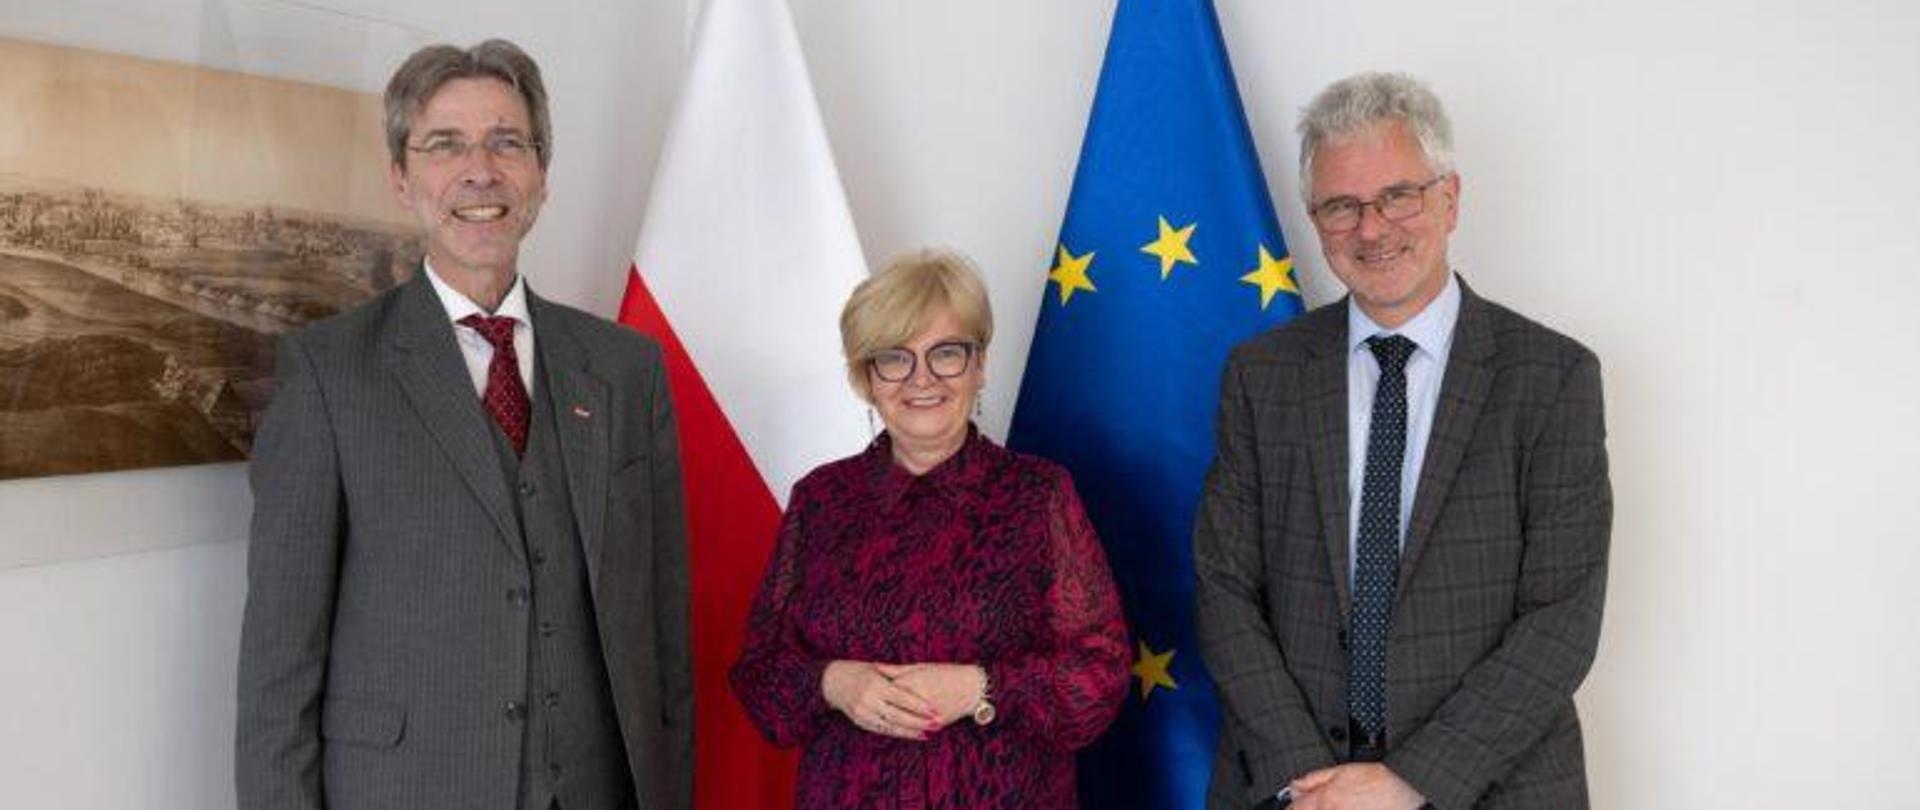 Wojewoda podkarpacki Teresa Kubas-Hul, ambasador Republiki Austrii Andreas Stadler oraz konsul generalnym Austrii w Krakowie Martin Gärtner. Wizyta miała charakter kurtuazyjny. 